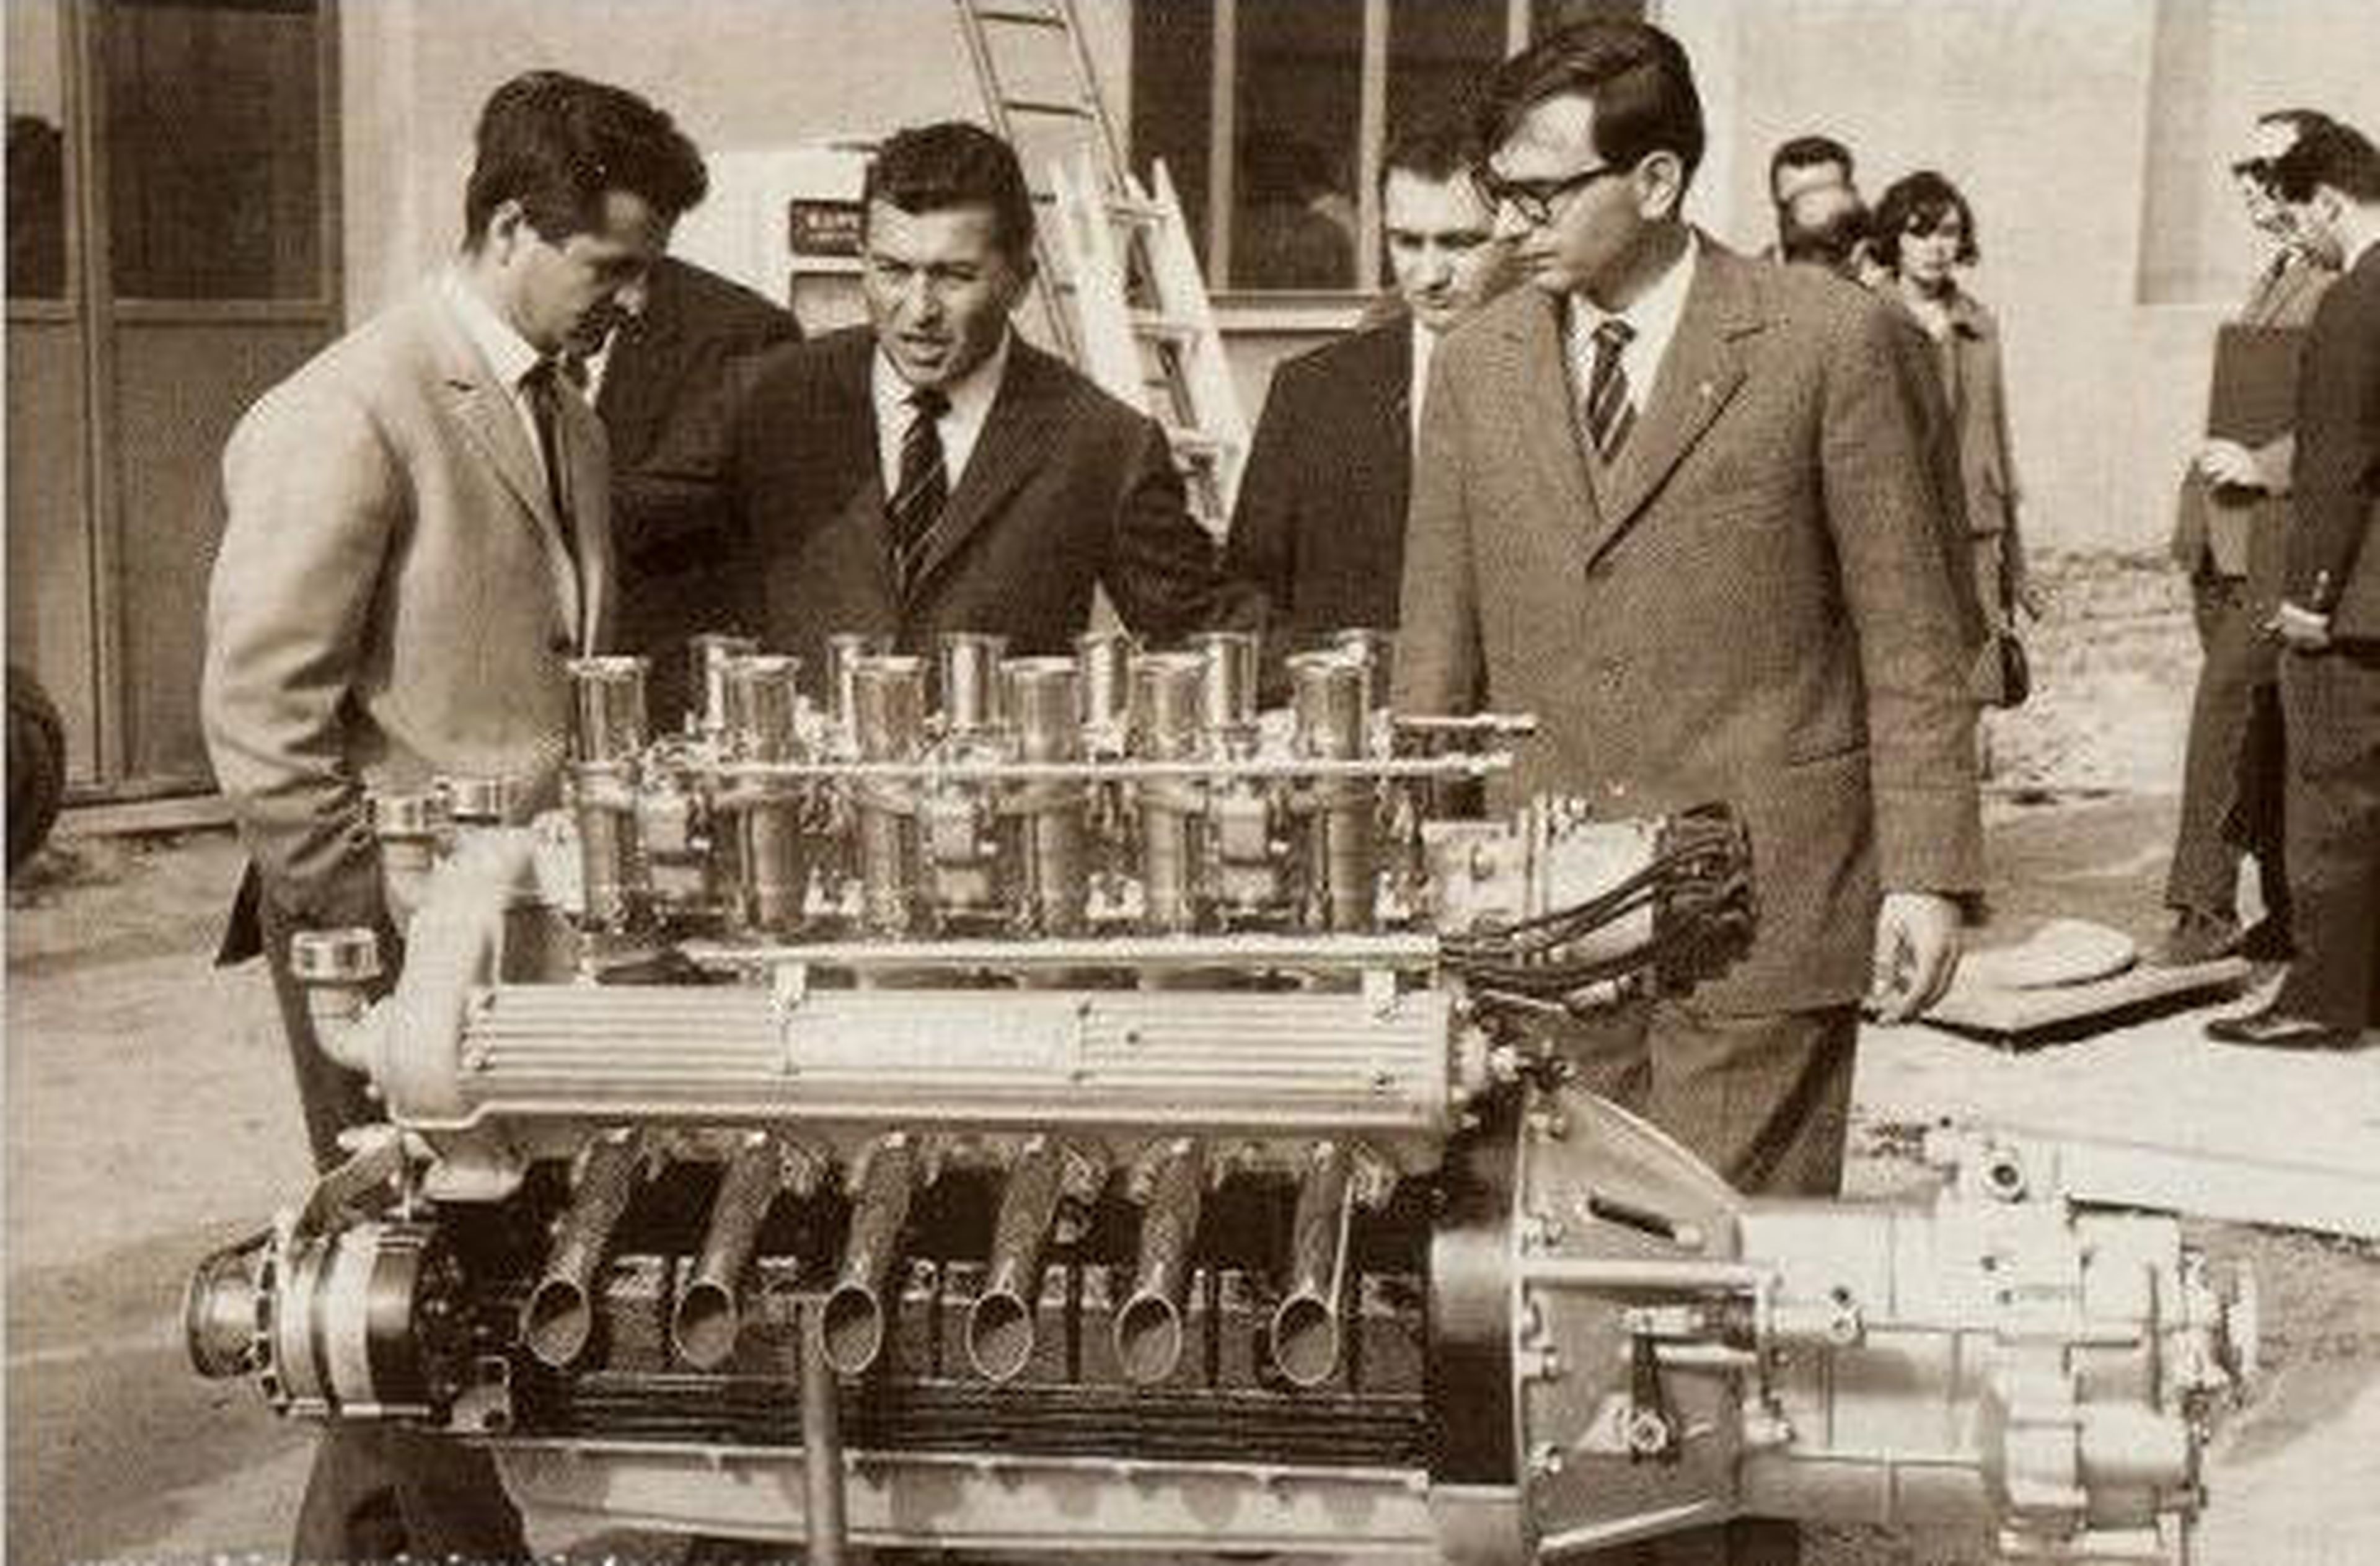 Prototipo de motor V12 de Lamborghini con Giotto Bizzarrini, Ferrucio Lamborghini y Gian Paolo Dallara.